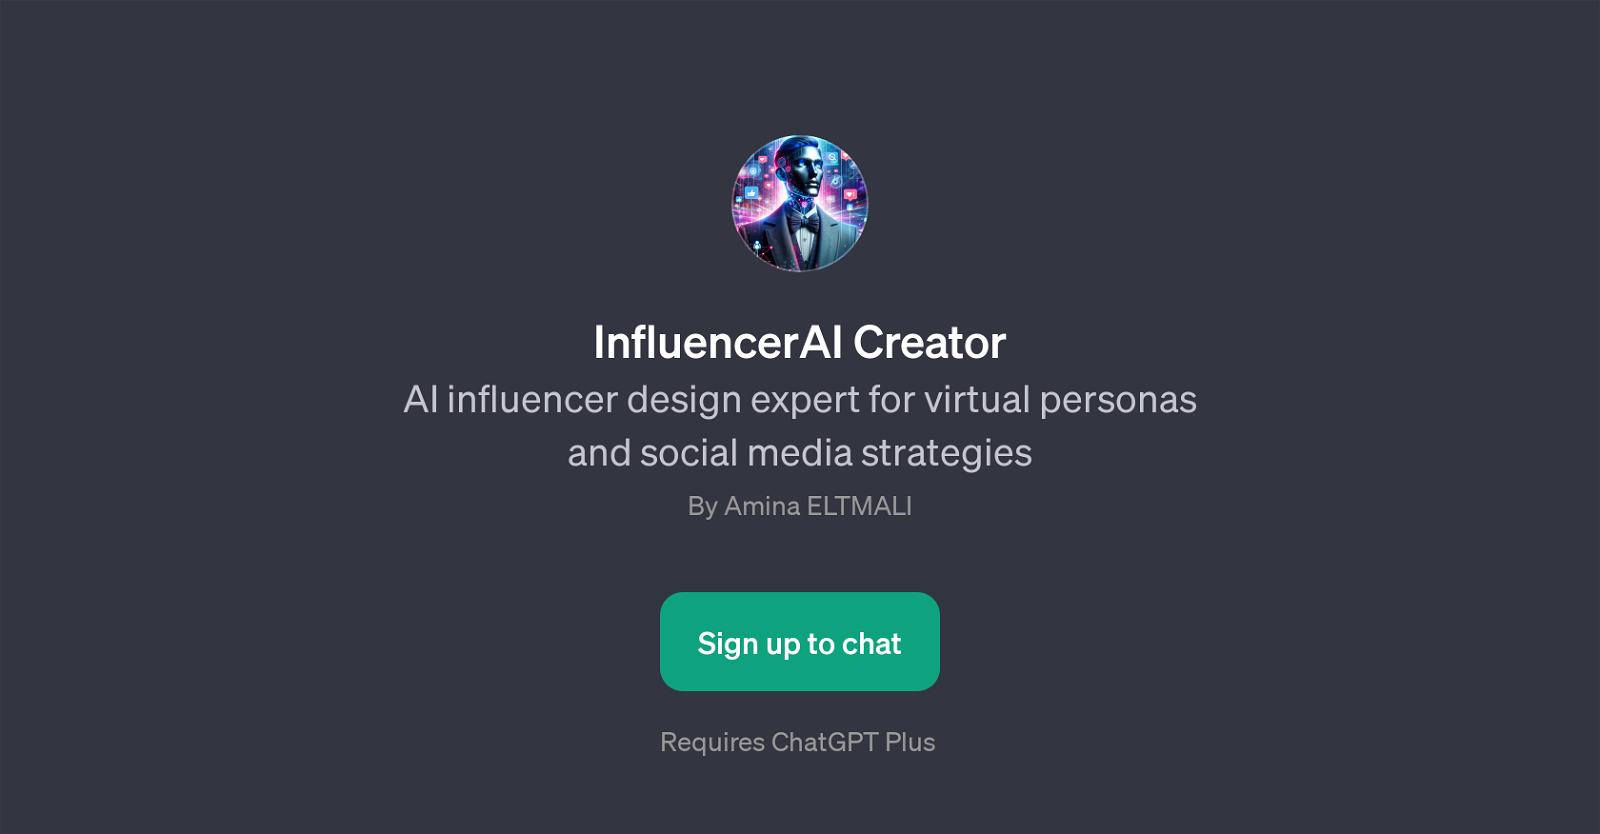 InfluencerAI Creator website